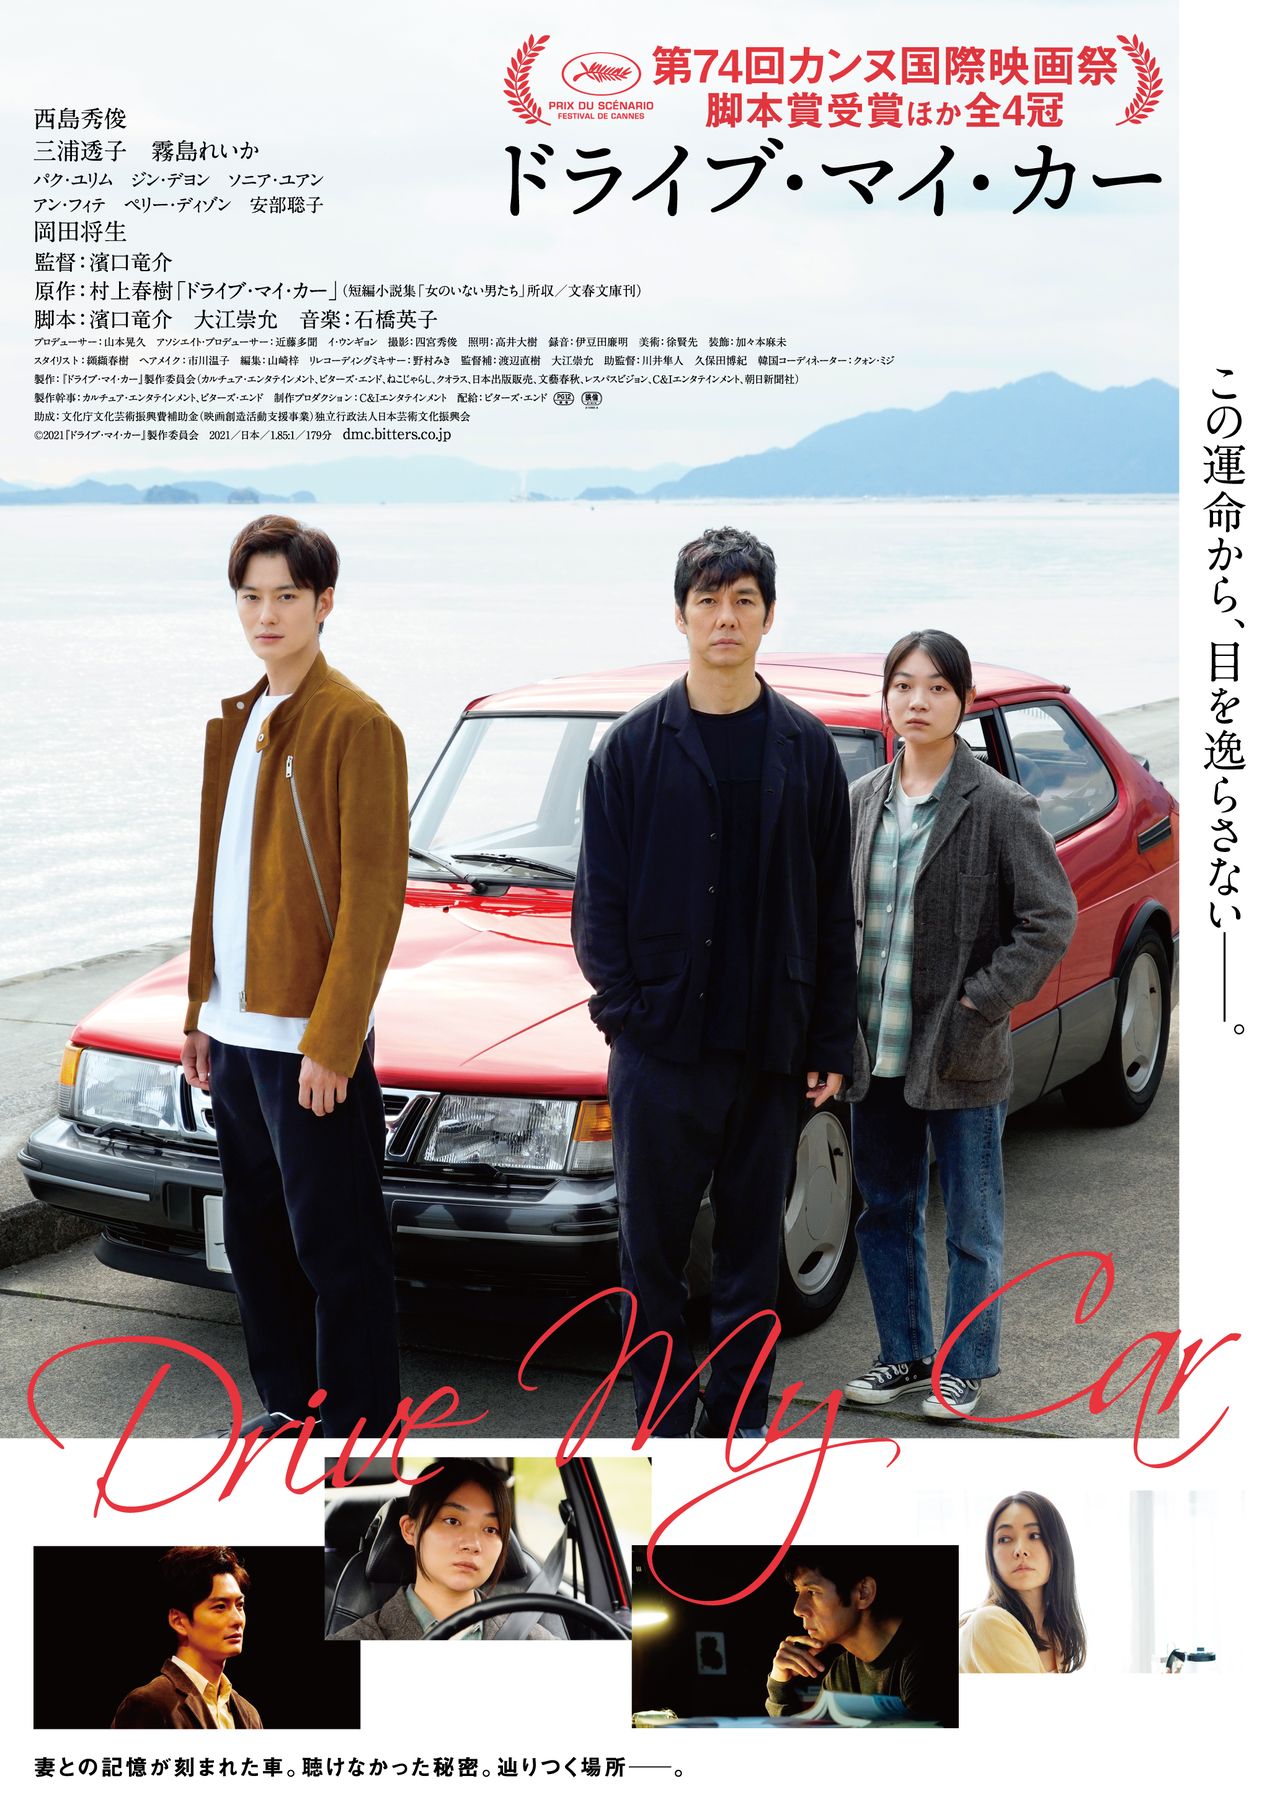 L'affiche japonaise du film (© 2021 Drive My Car Production Committee)